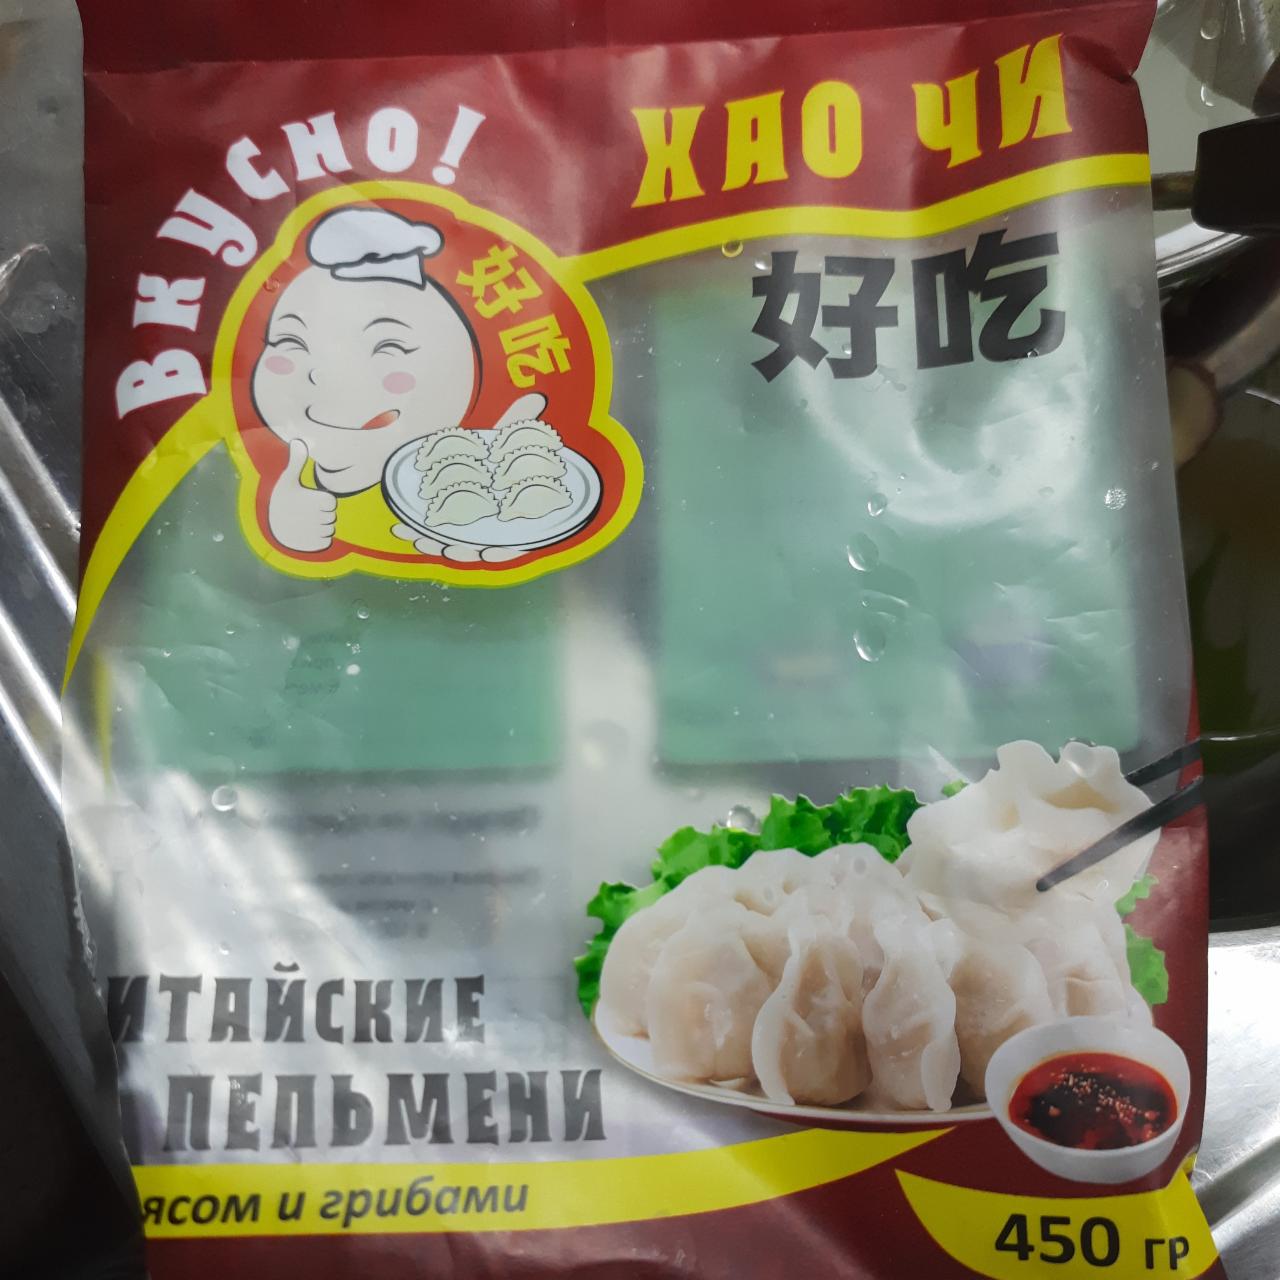 Фото - Китайские пельмени с мясом и грибами Вкусно!